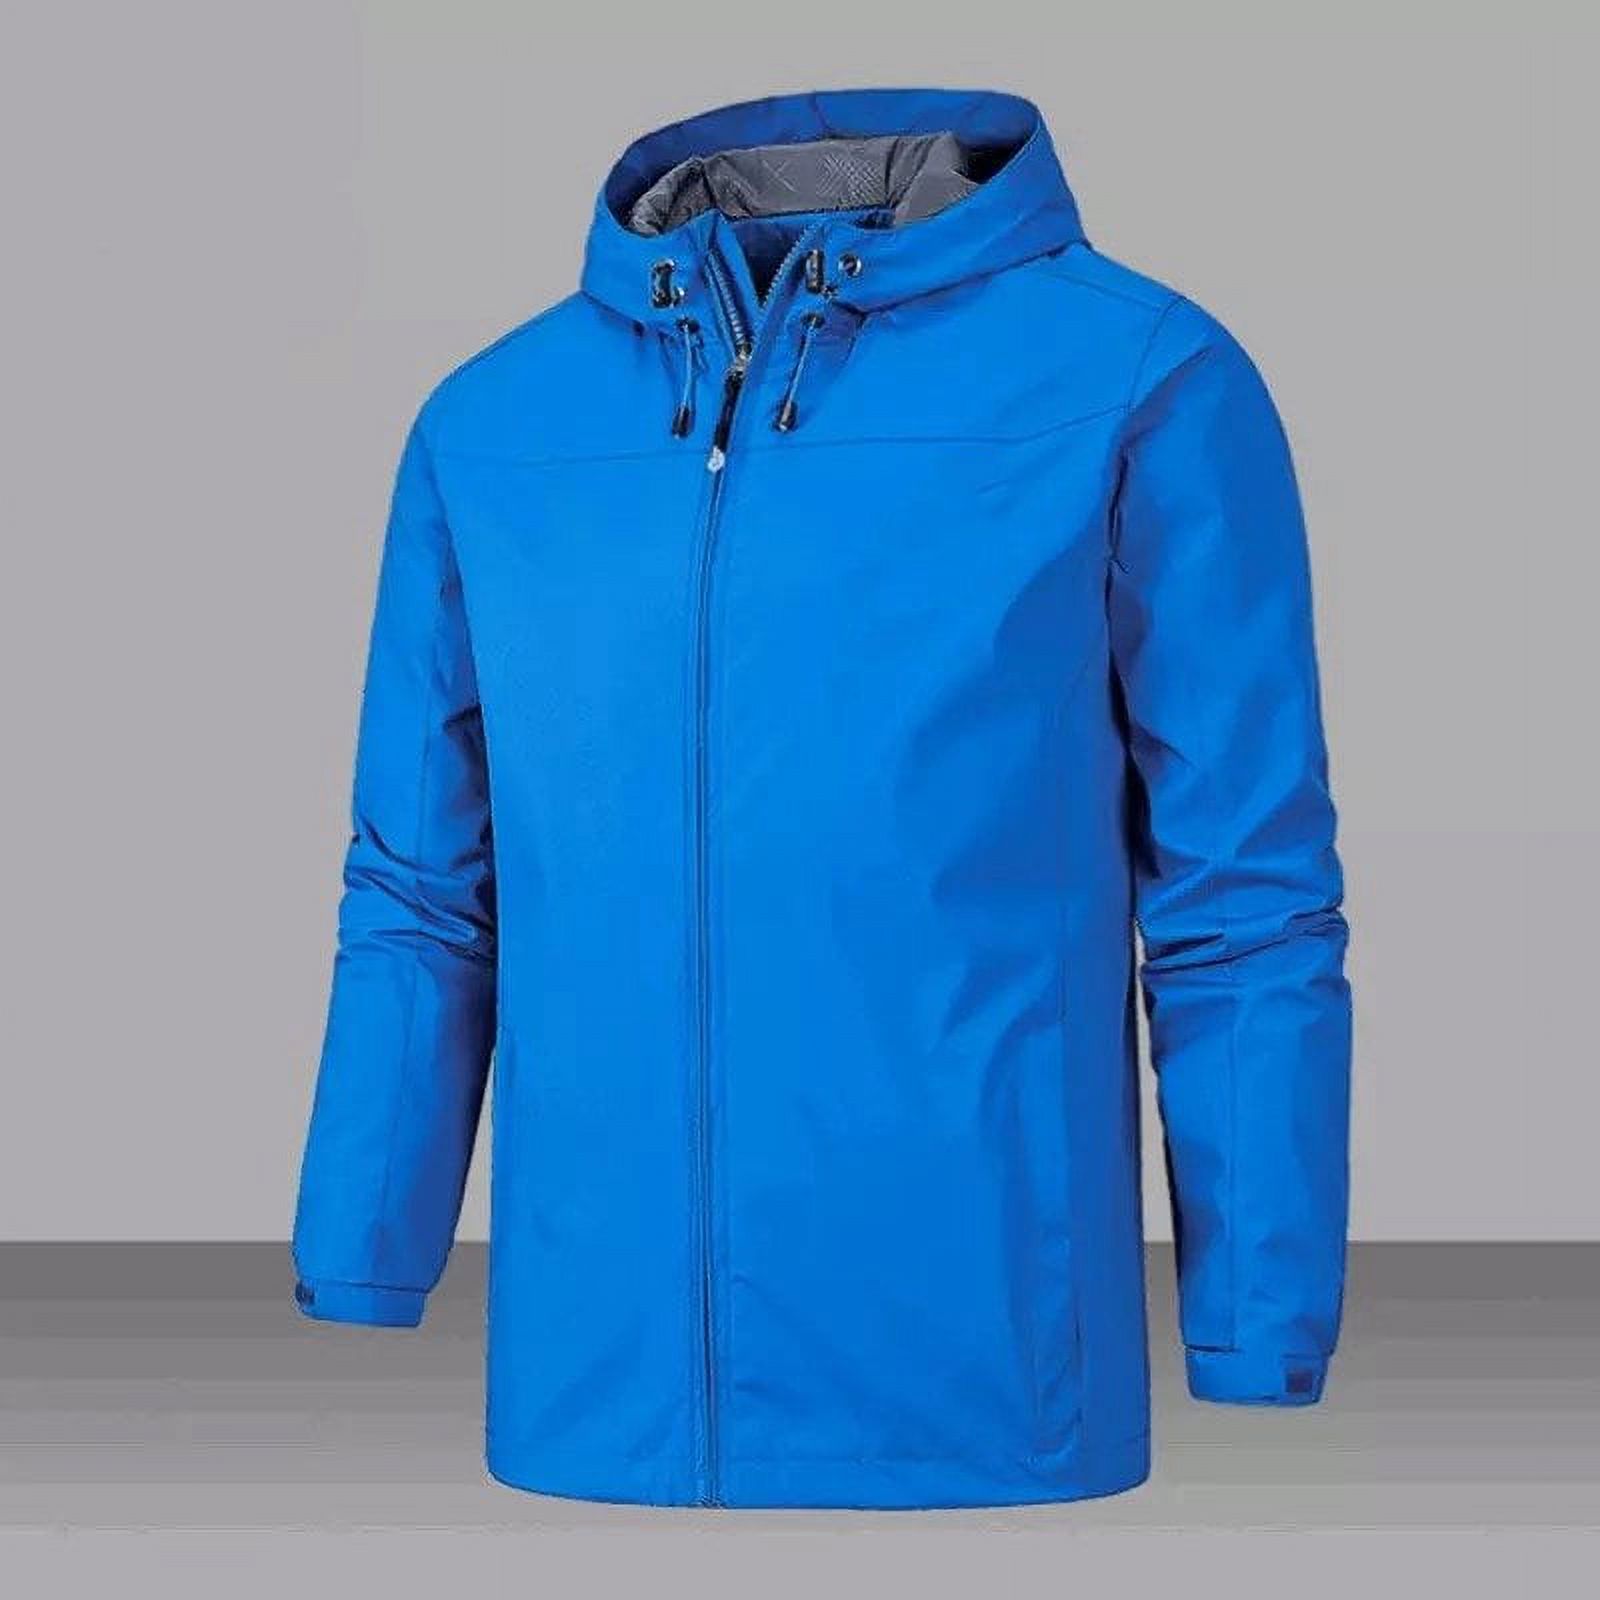 Zoomarlous Unisex Windproof Waterproof Jacket 2021 Outdoor Mountaineering Autumn Winter Jacket Zipper Design - image 3 of 10